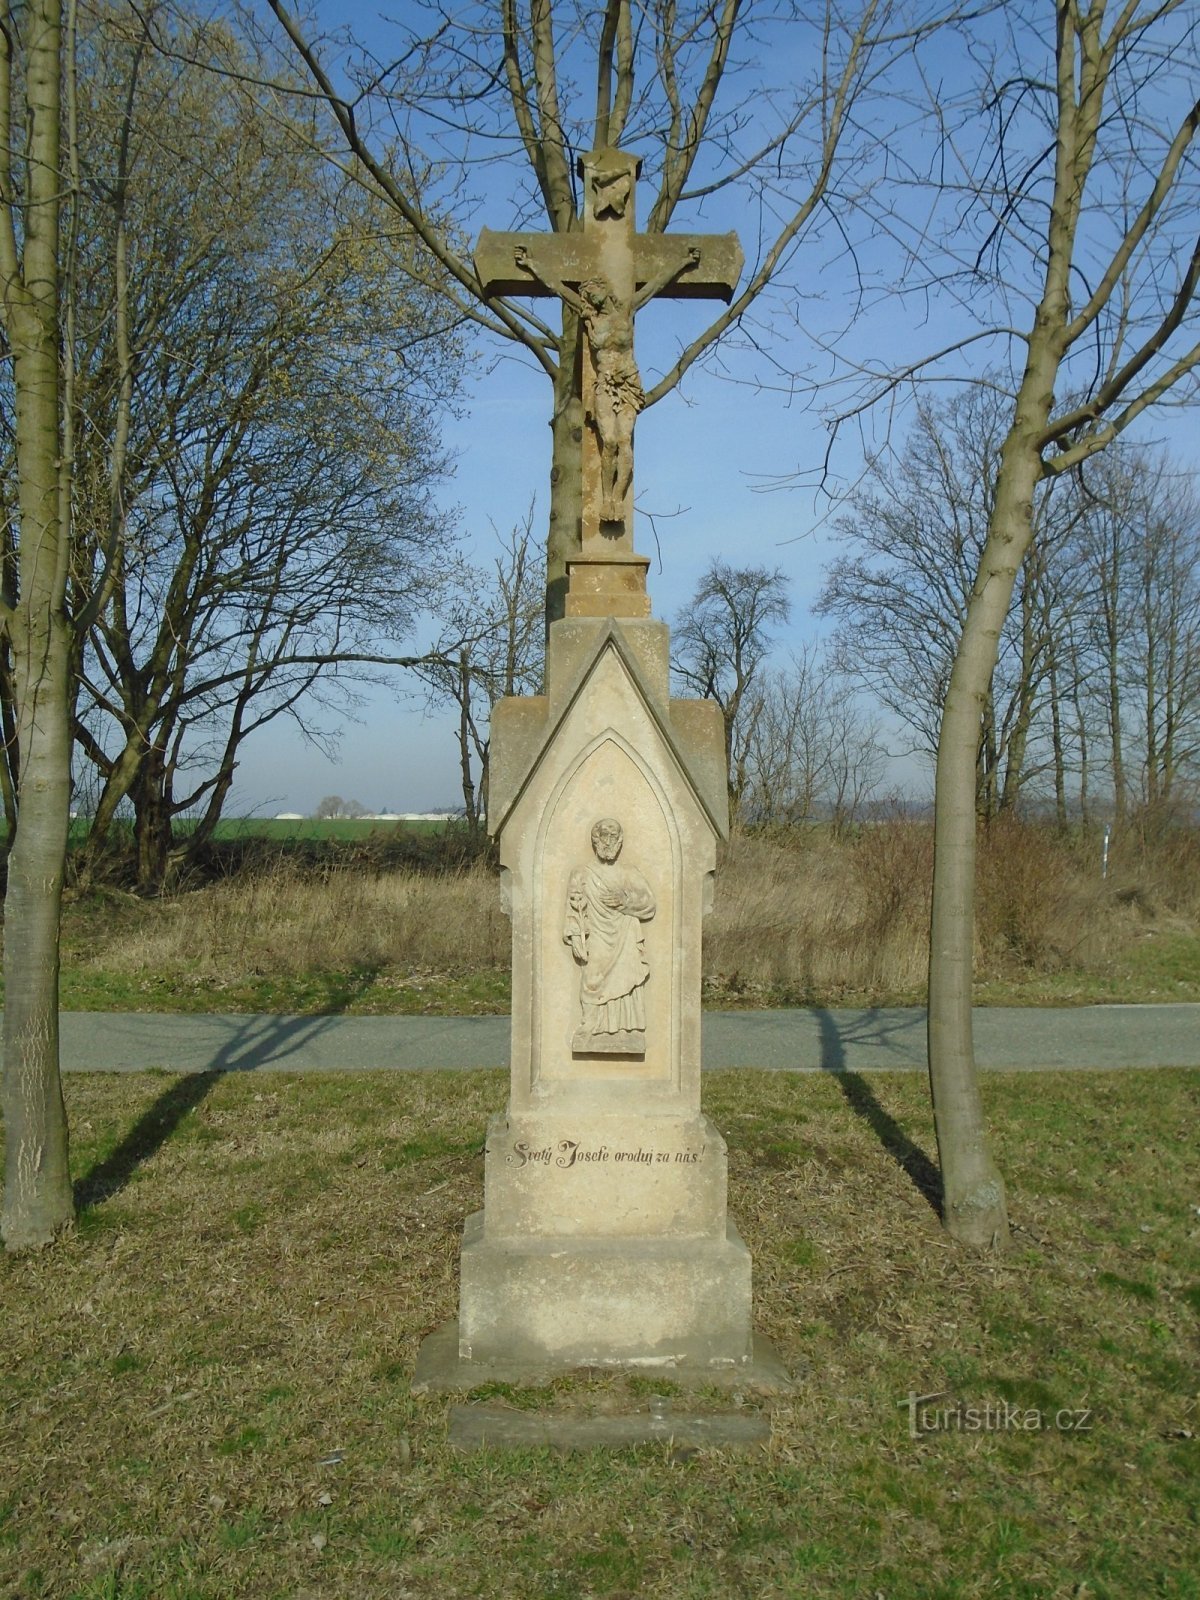 Σταυρός στο σταυροδρόμι (Vrchovnice)